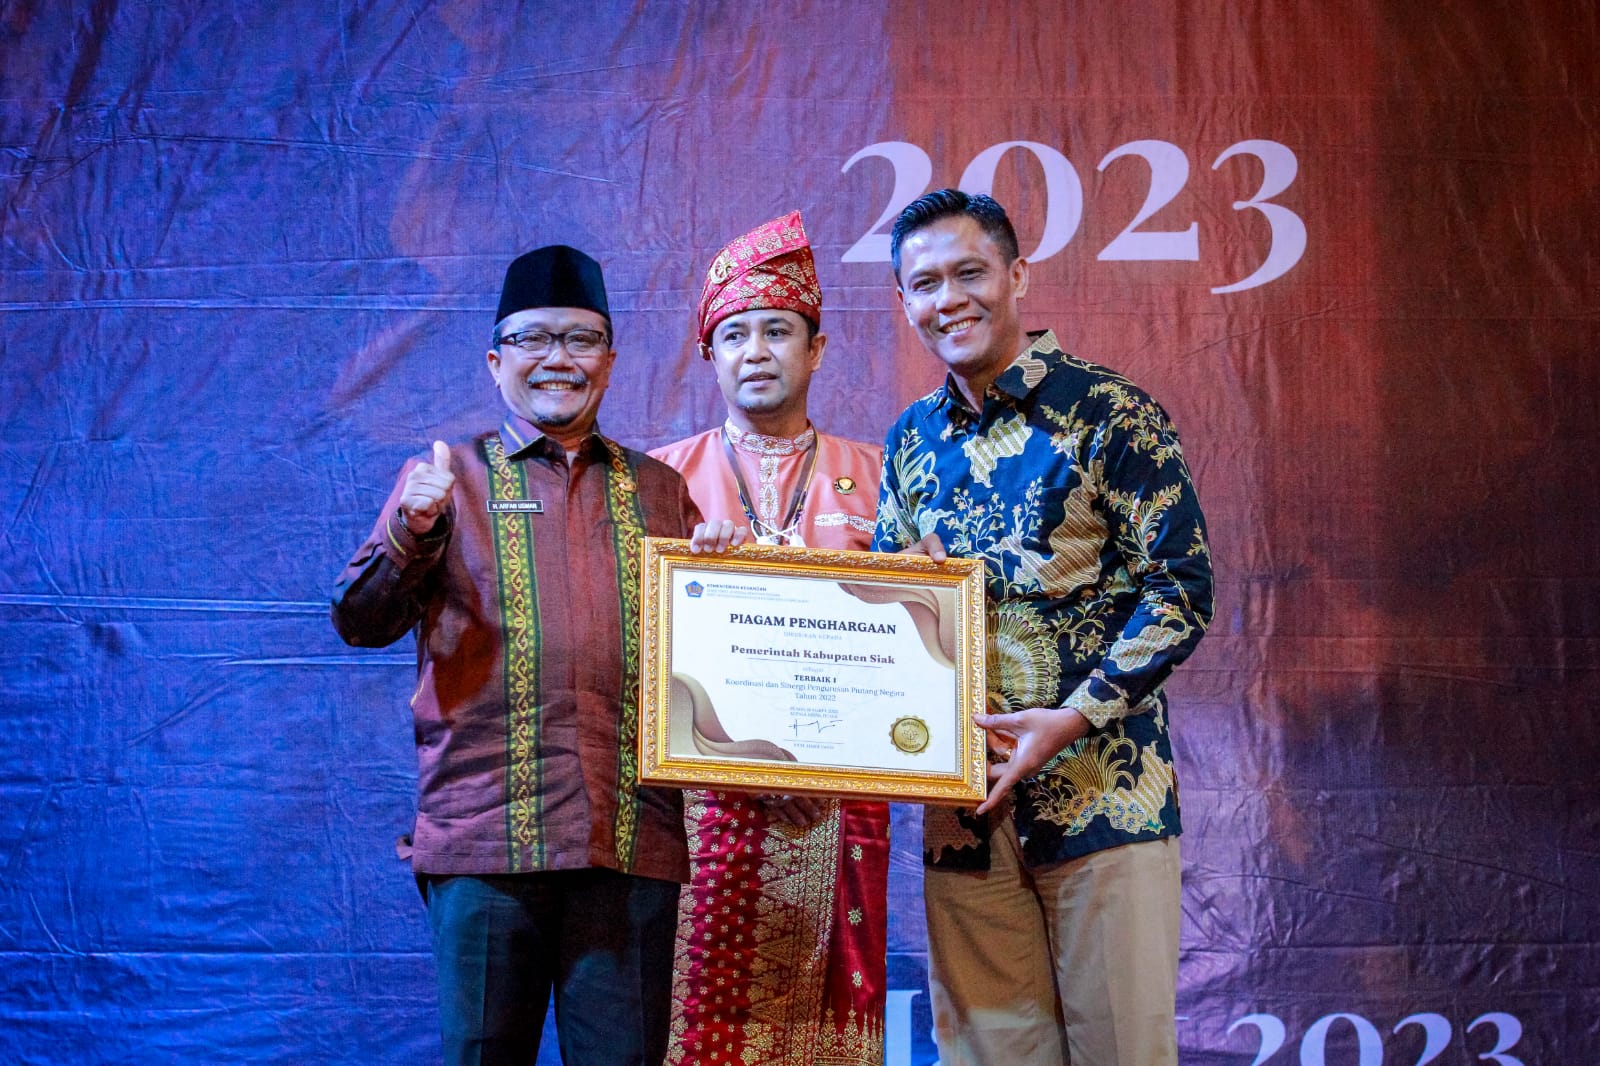 Seroja Awards KPKN Dumai 2023 Pemkab Siak Raih Penghargaan